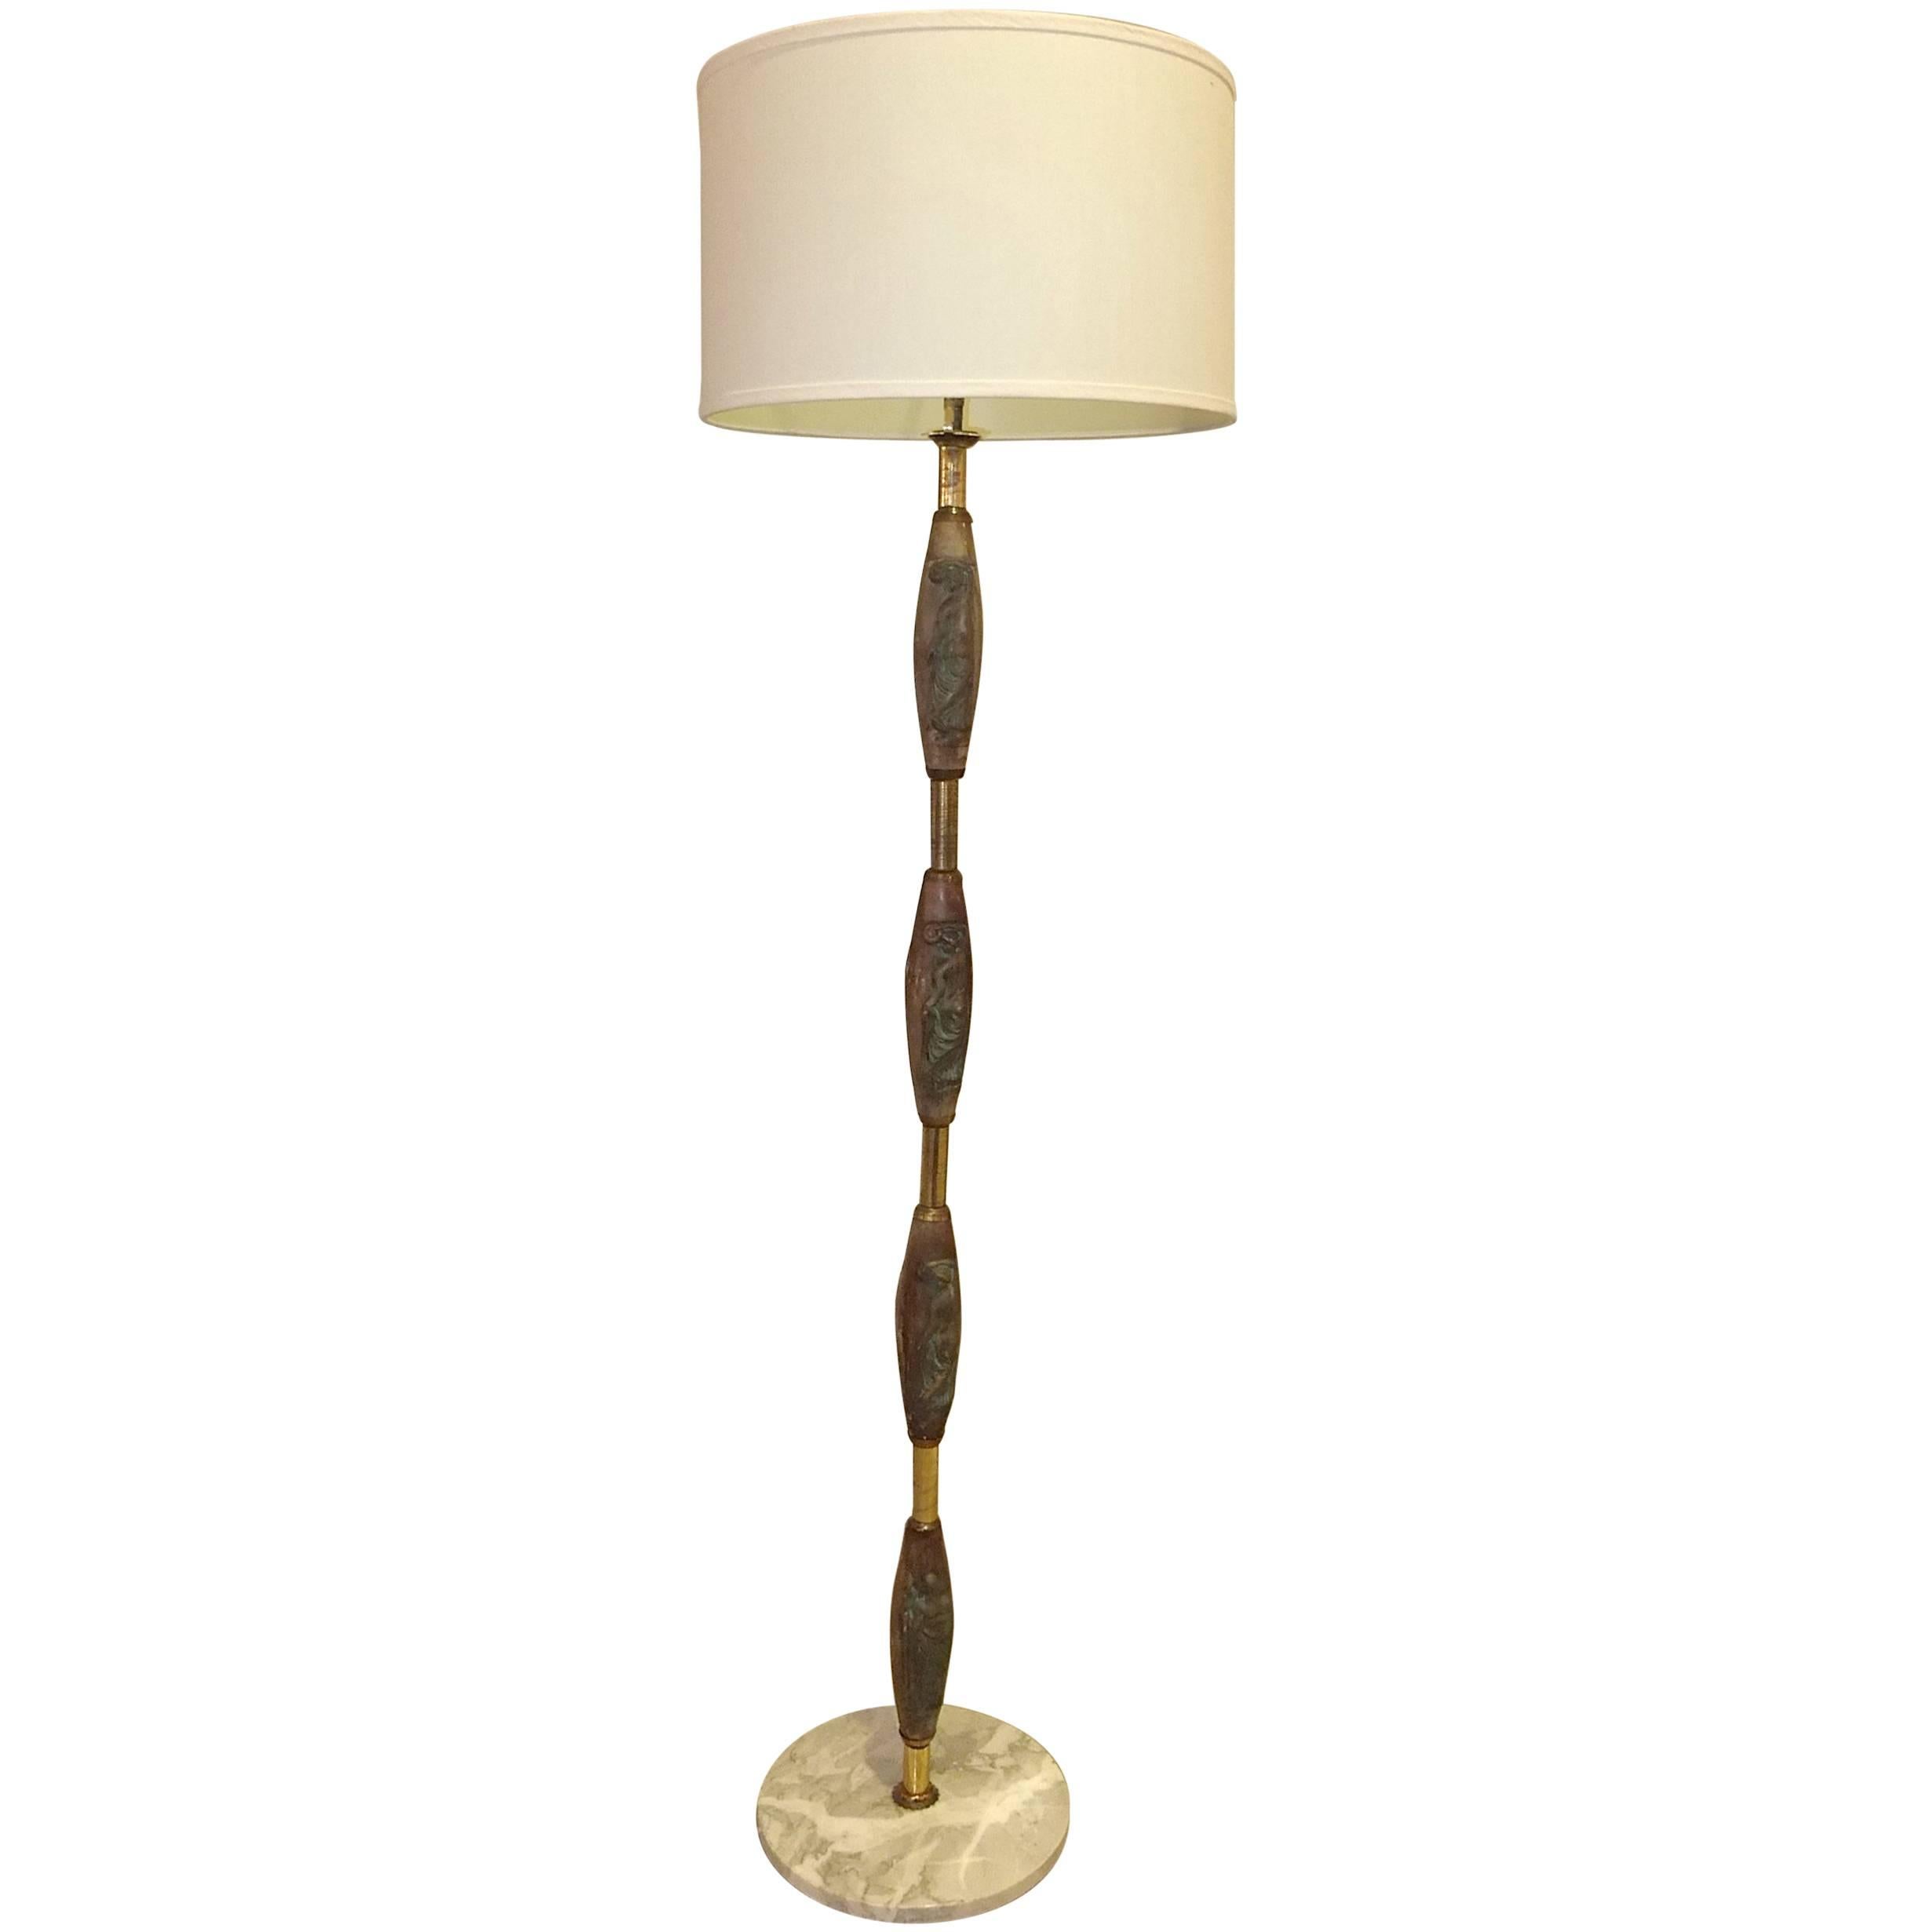 1940s, Italian, Porcelain and Brass Floor Lamp